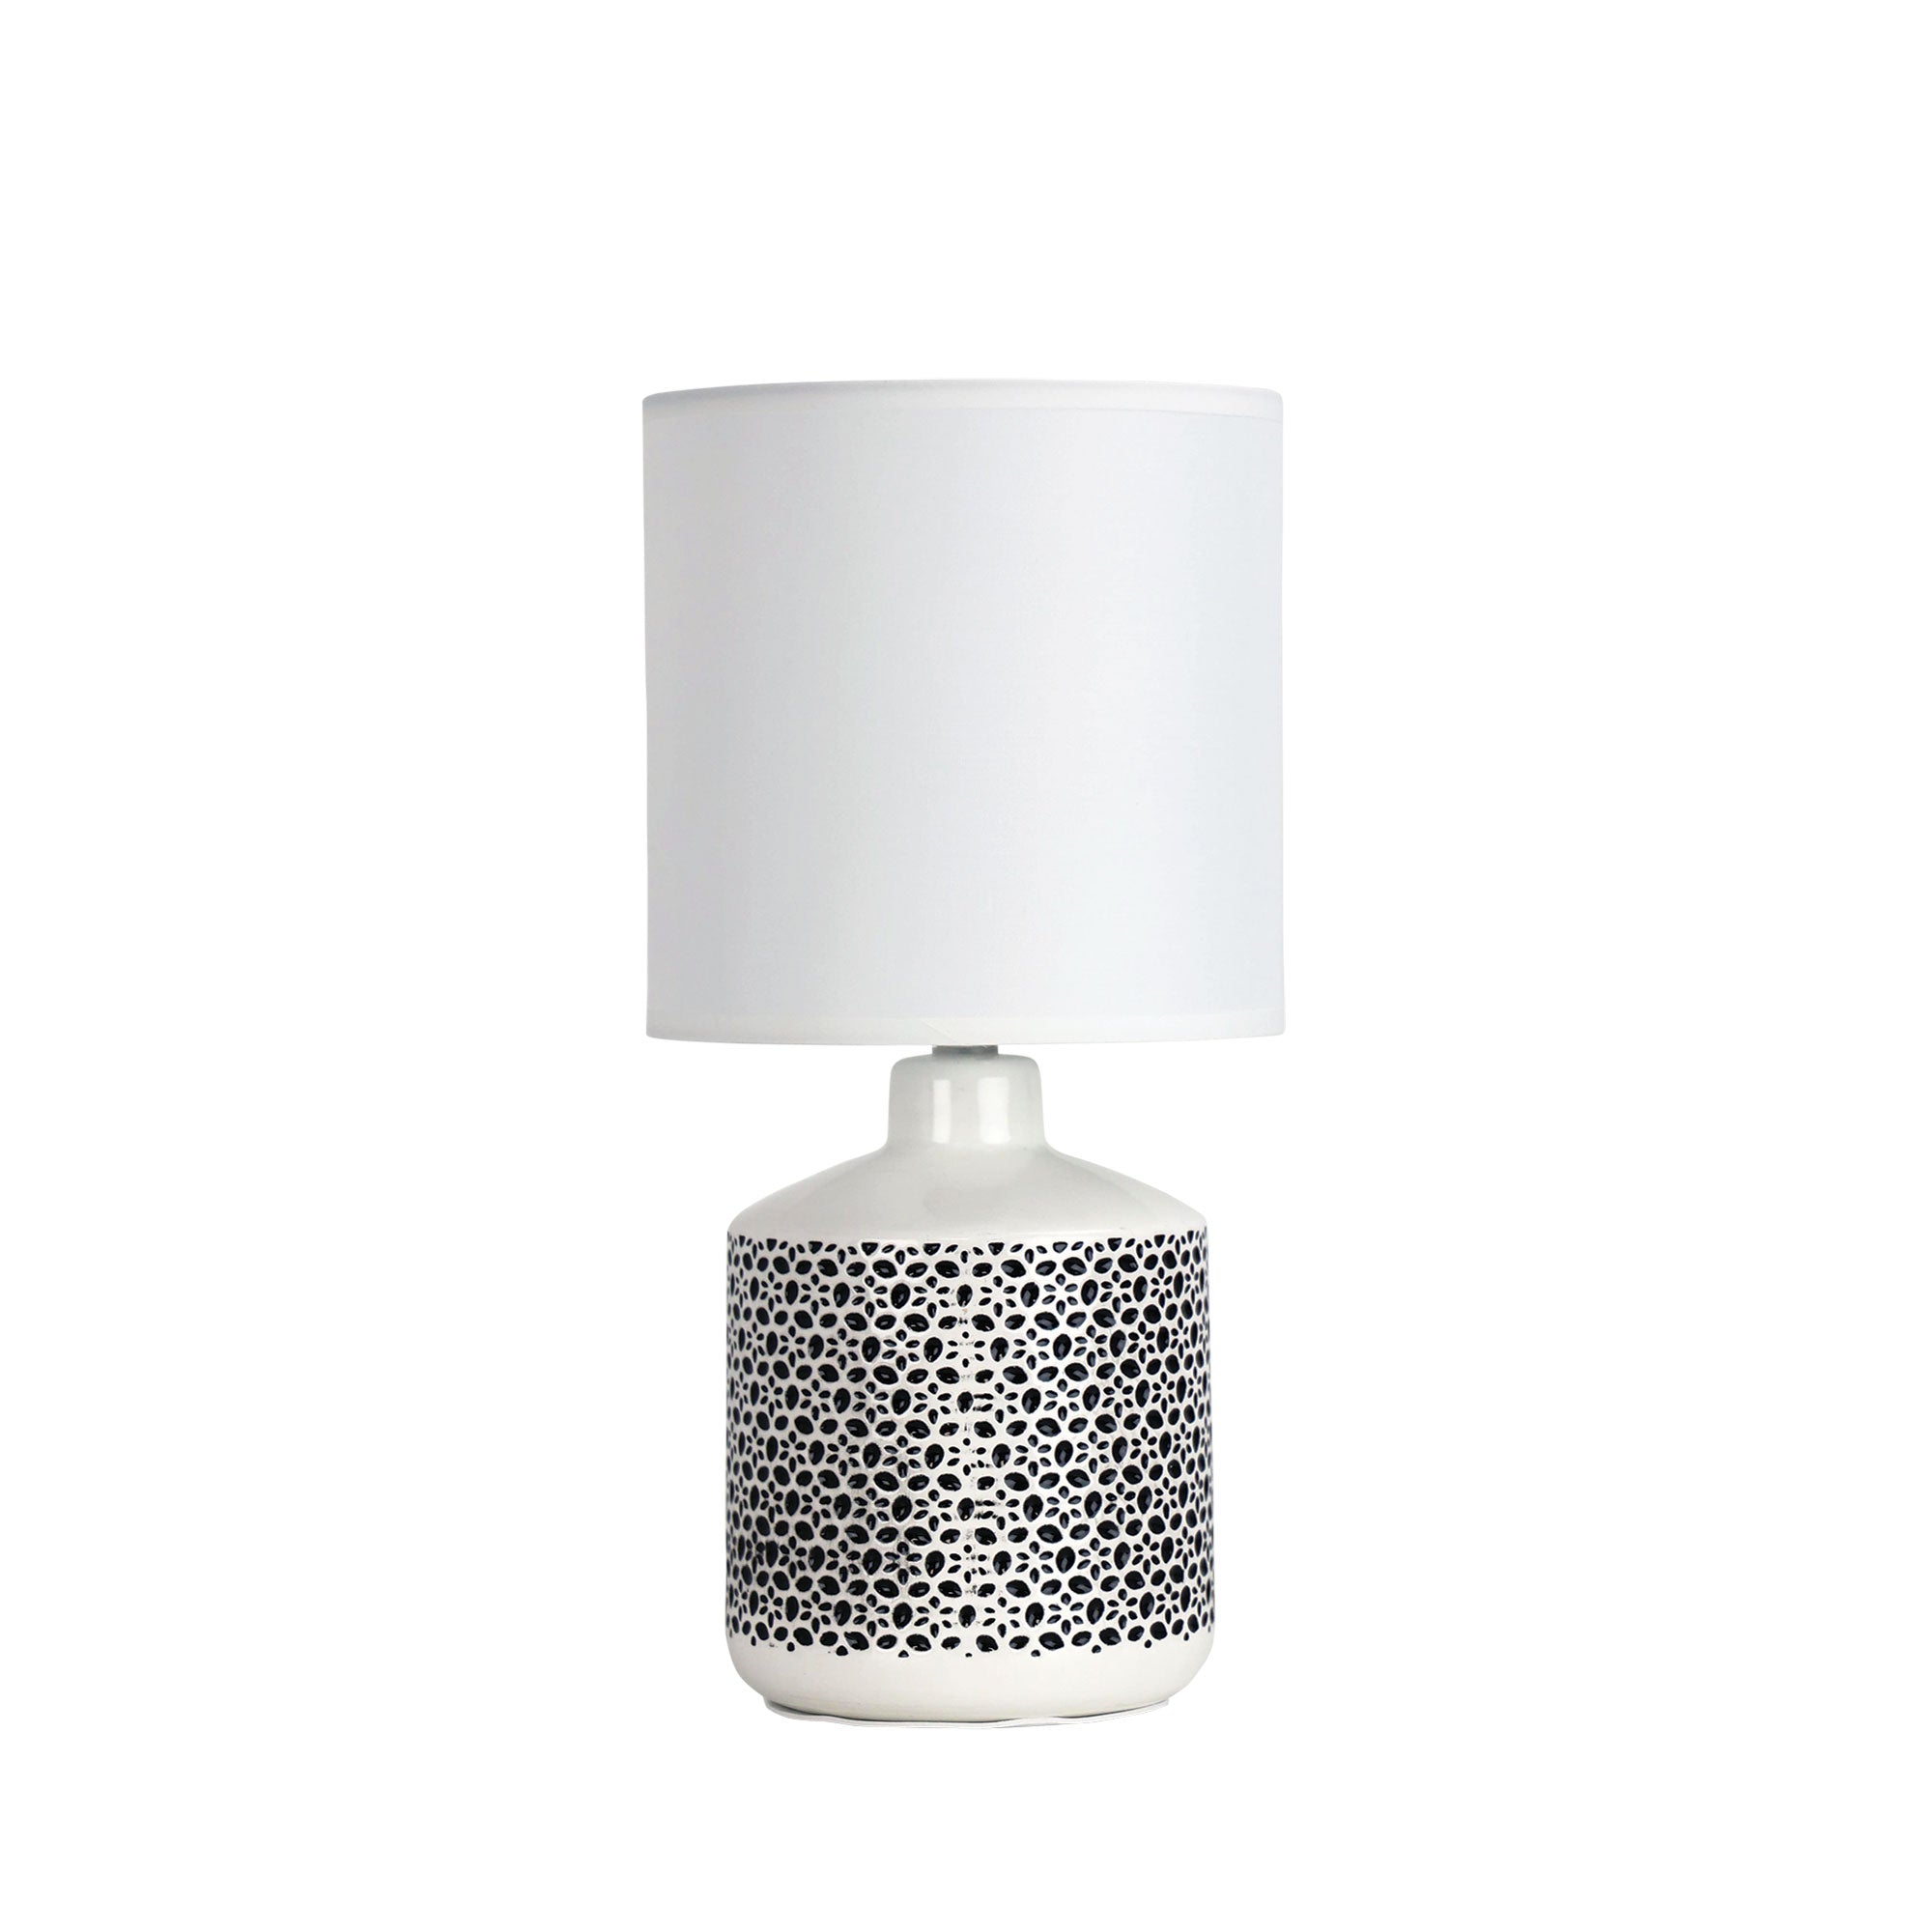 Celia 1 Light Table Lamp White - OL90117WH